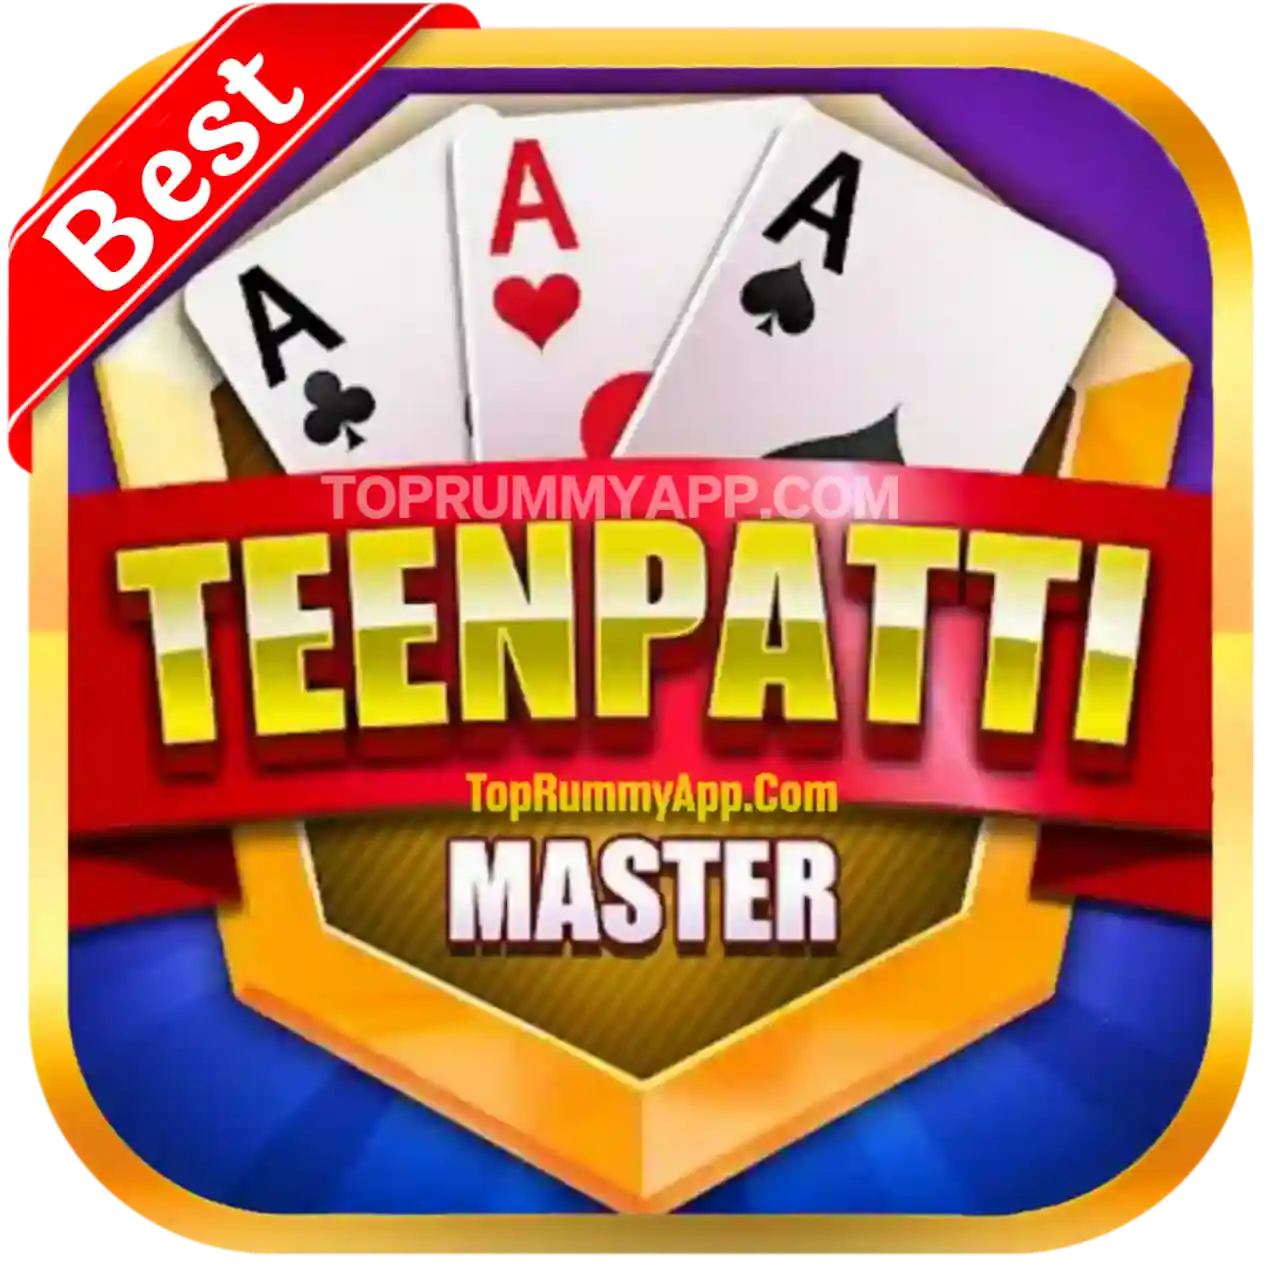 Teen Patti Master Apk Download - Top 10 Teen Patti App List